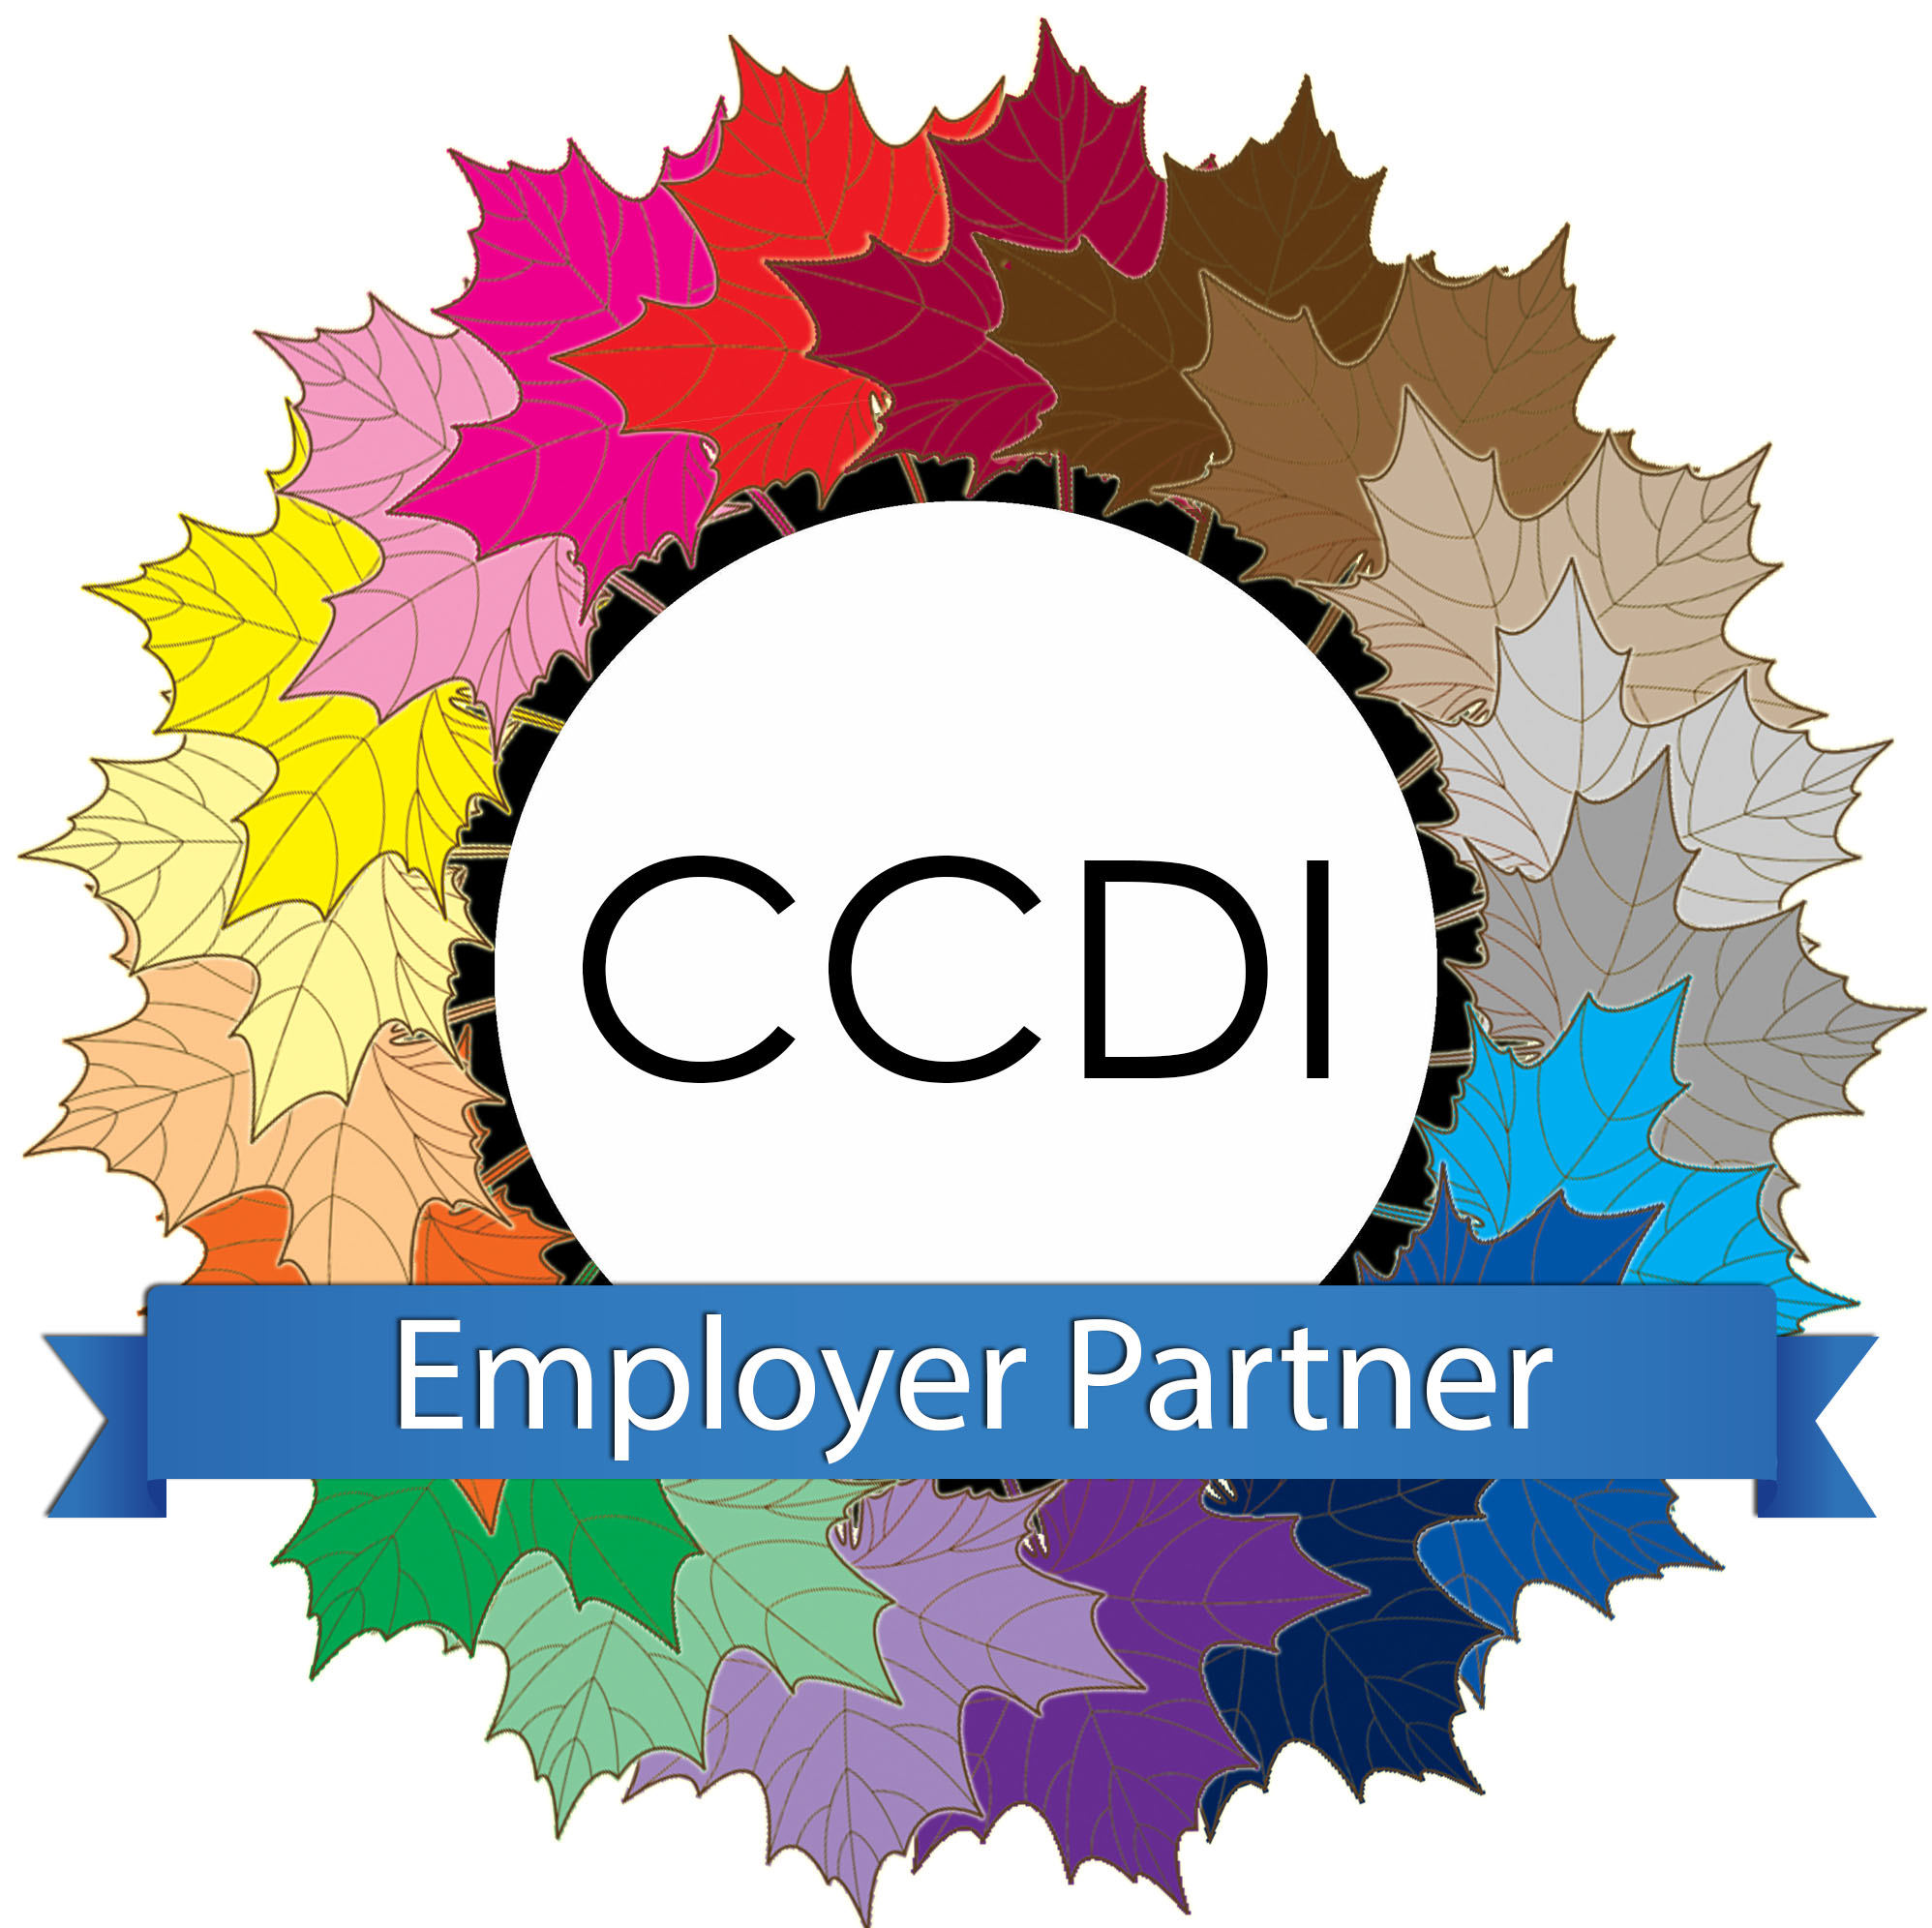 20151013 - CCDI - Logo - Employer Partner.jpg